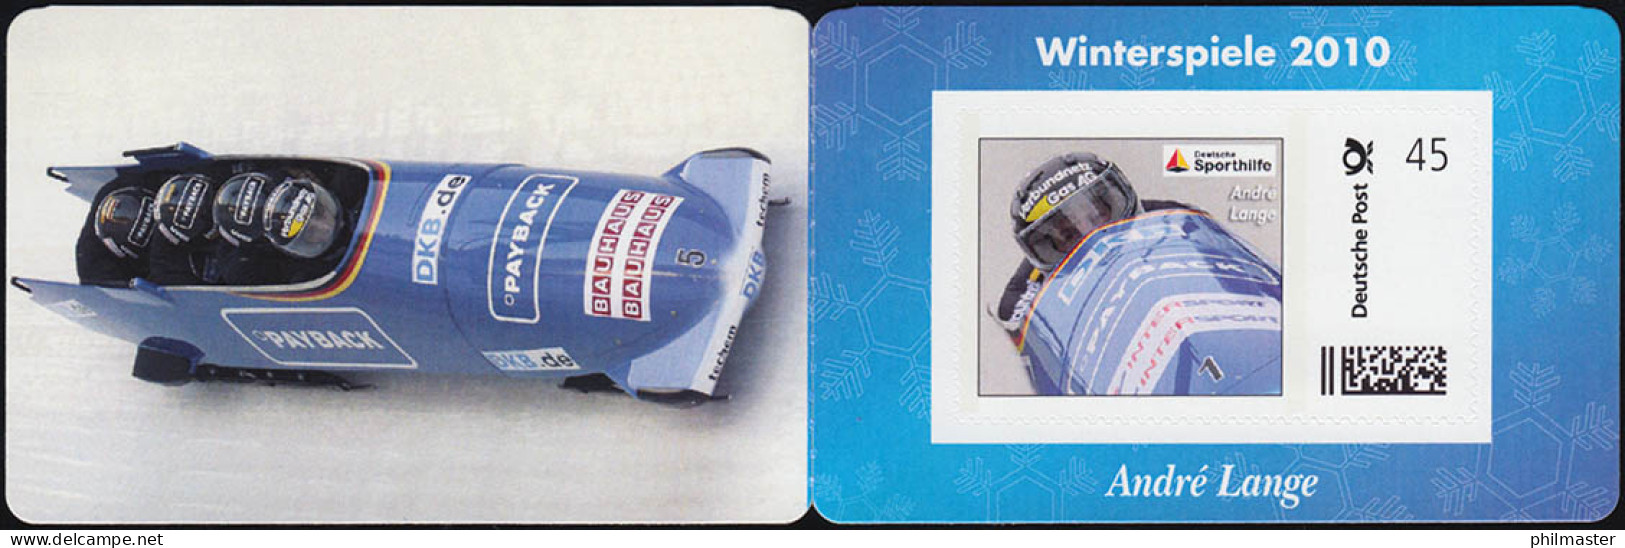 Sporthilfe: Winterspiele 2010 Portocard Bobsport Andre Lange,selbstklebend, ** - Wintersport (Sonstige)